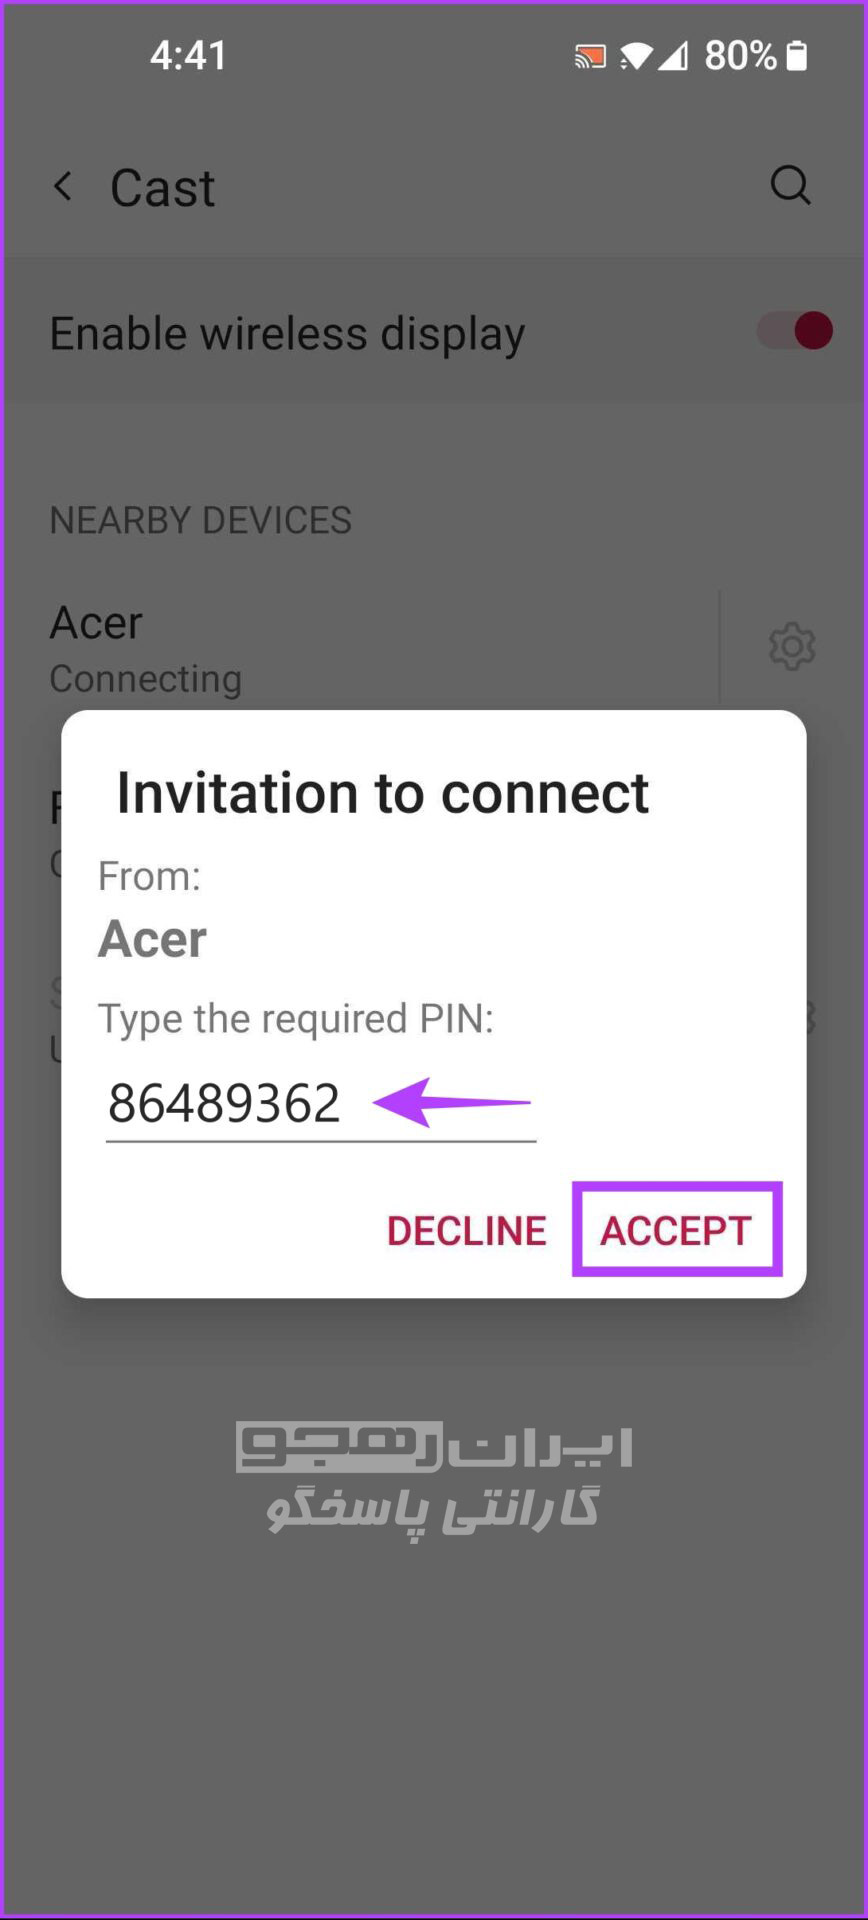  پین ۸ رقمی را در قسمت «Type the required PIN» در دستگاه Android خود وارد نمایید، سپس روی Accept ضربه بزنید.